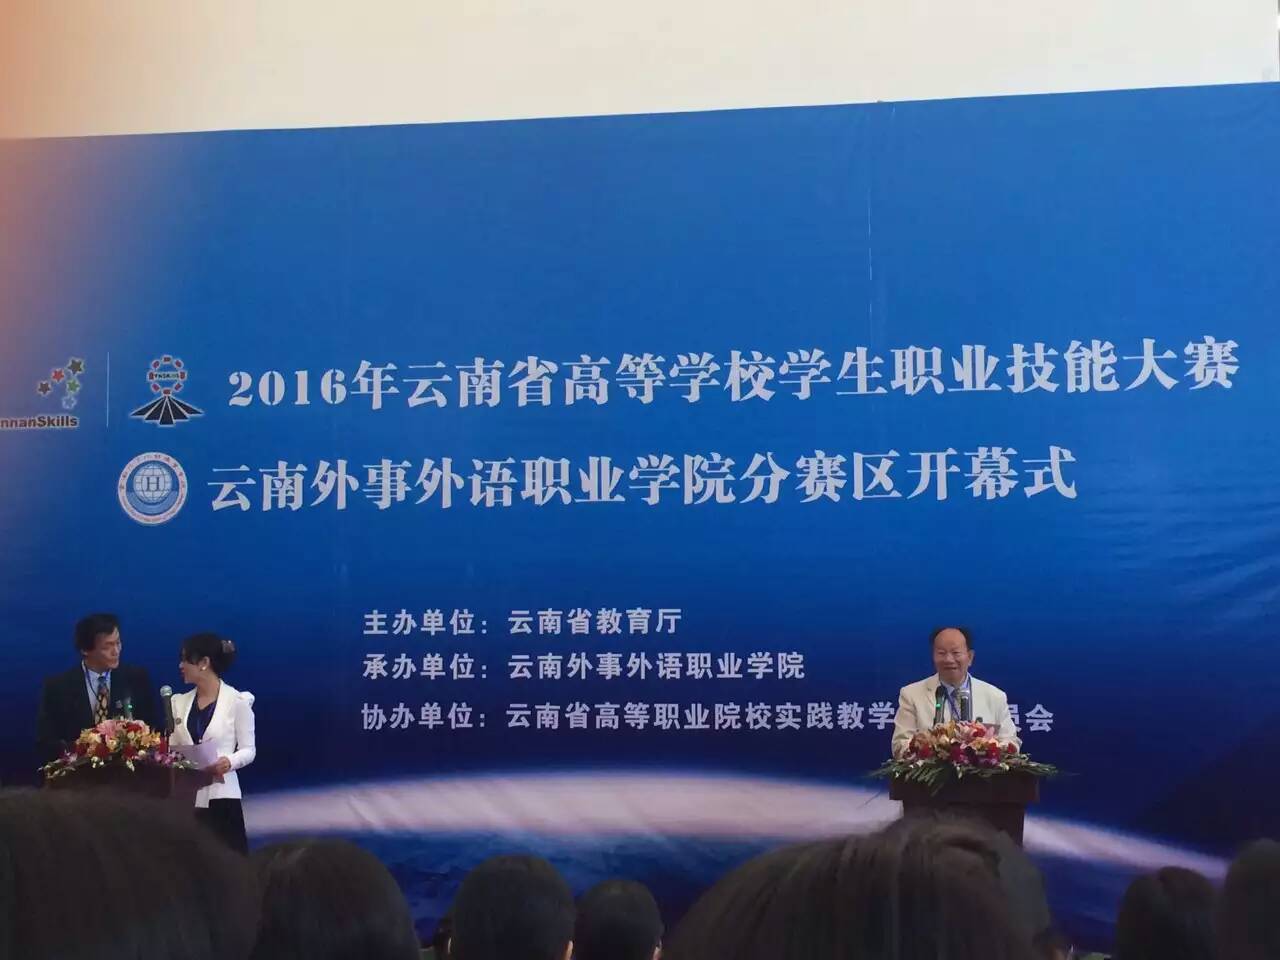 2016年云南省高等学校学生职业技能大赛 “英语口语”大赛